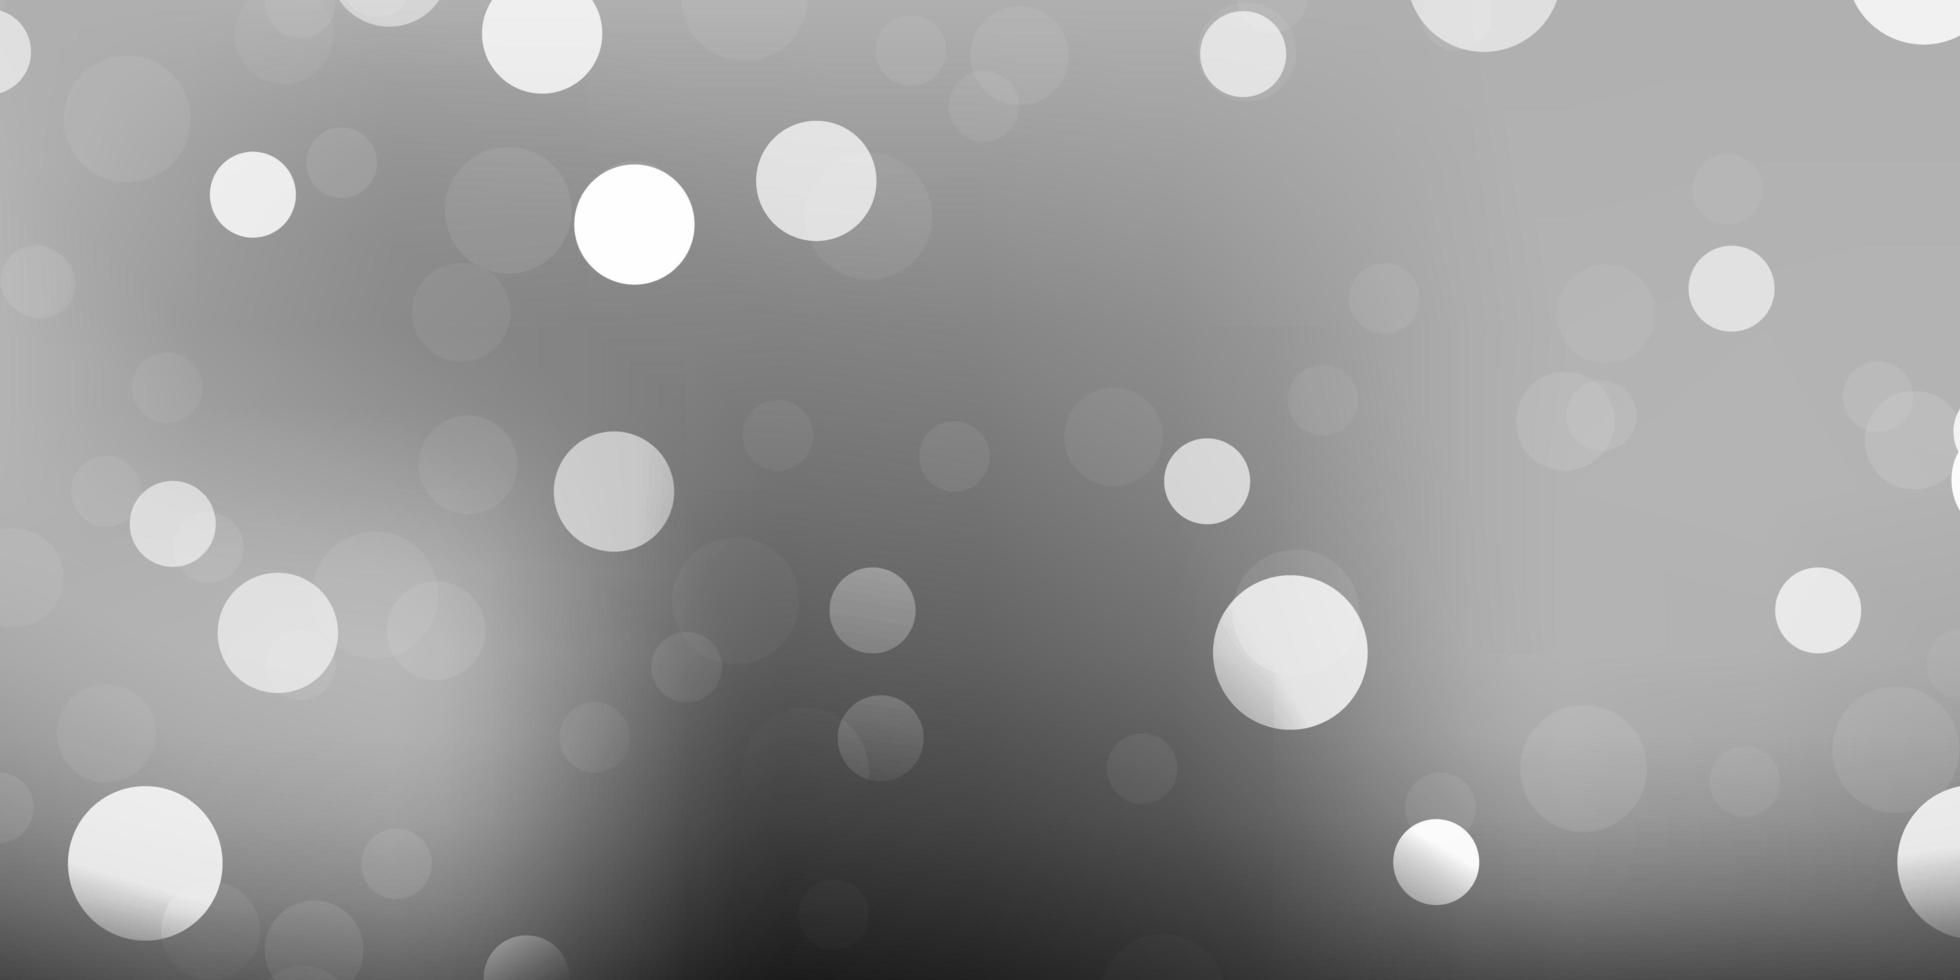 sfondo vettoriale grigio chiaro con forme casuali.